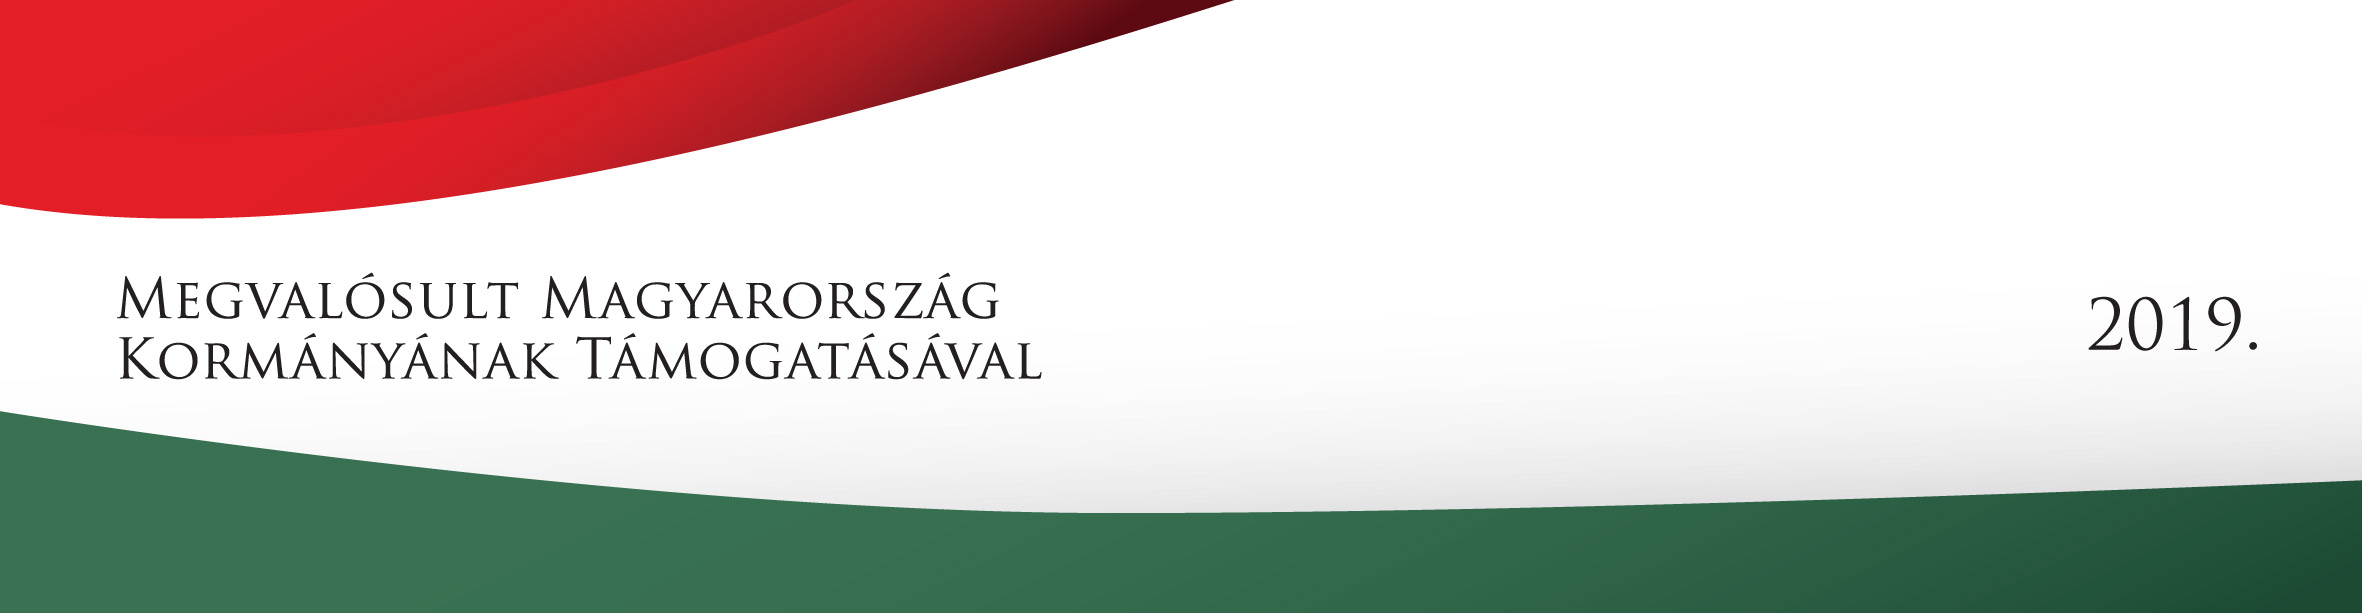 Megvalósult Magyarország Kormányának Támogatásával 2019 logó